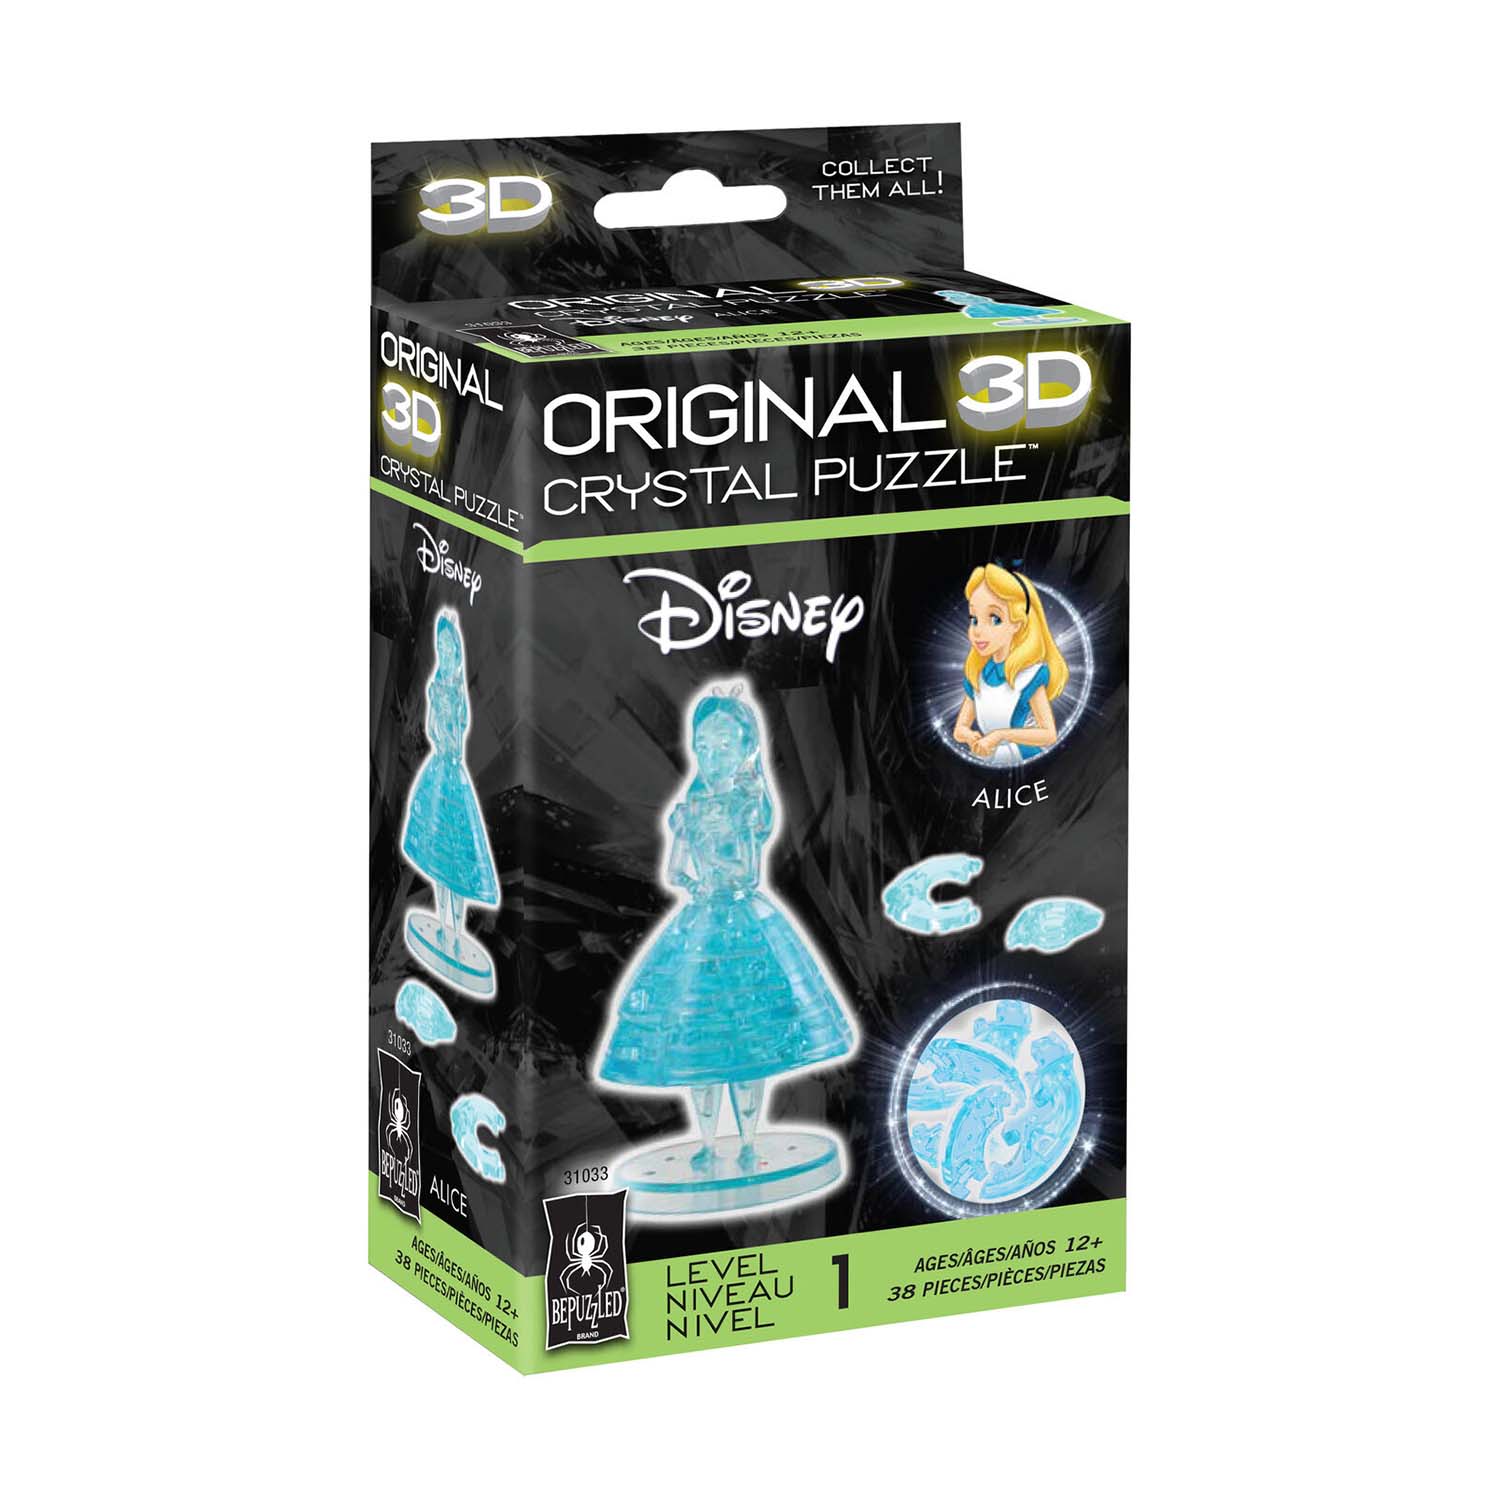 Alice Original 3D Crystal Puzzle